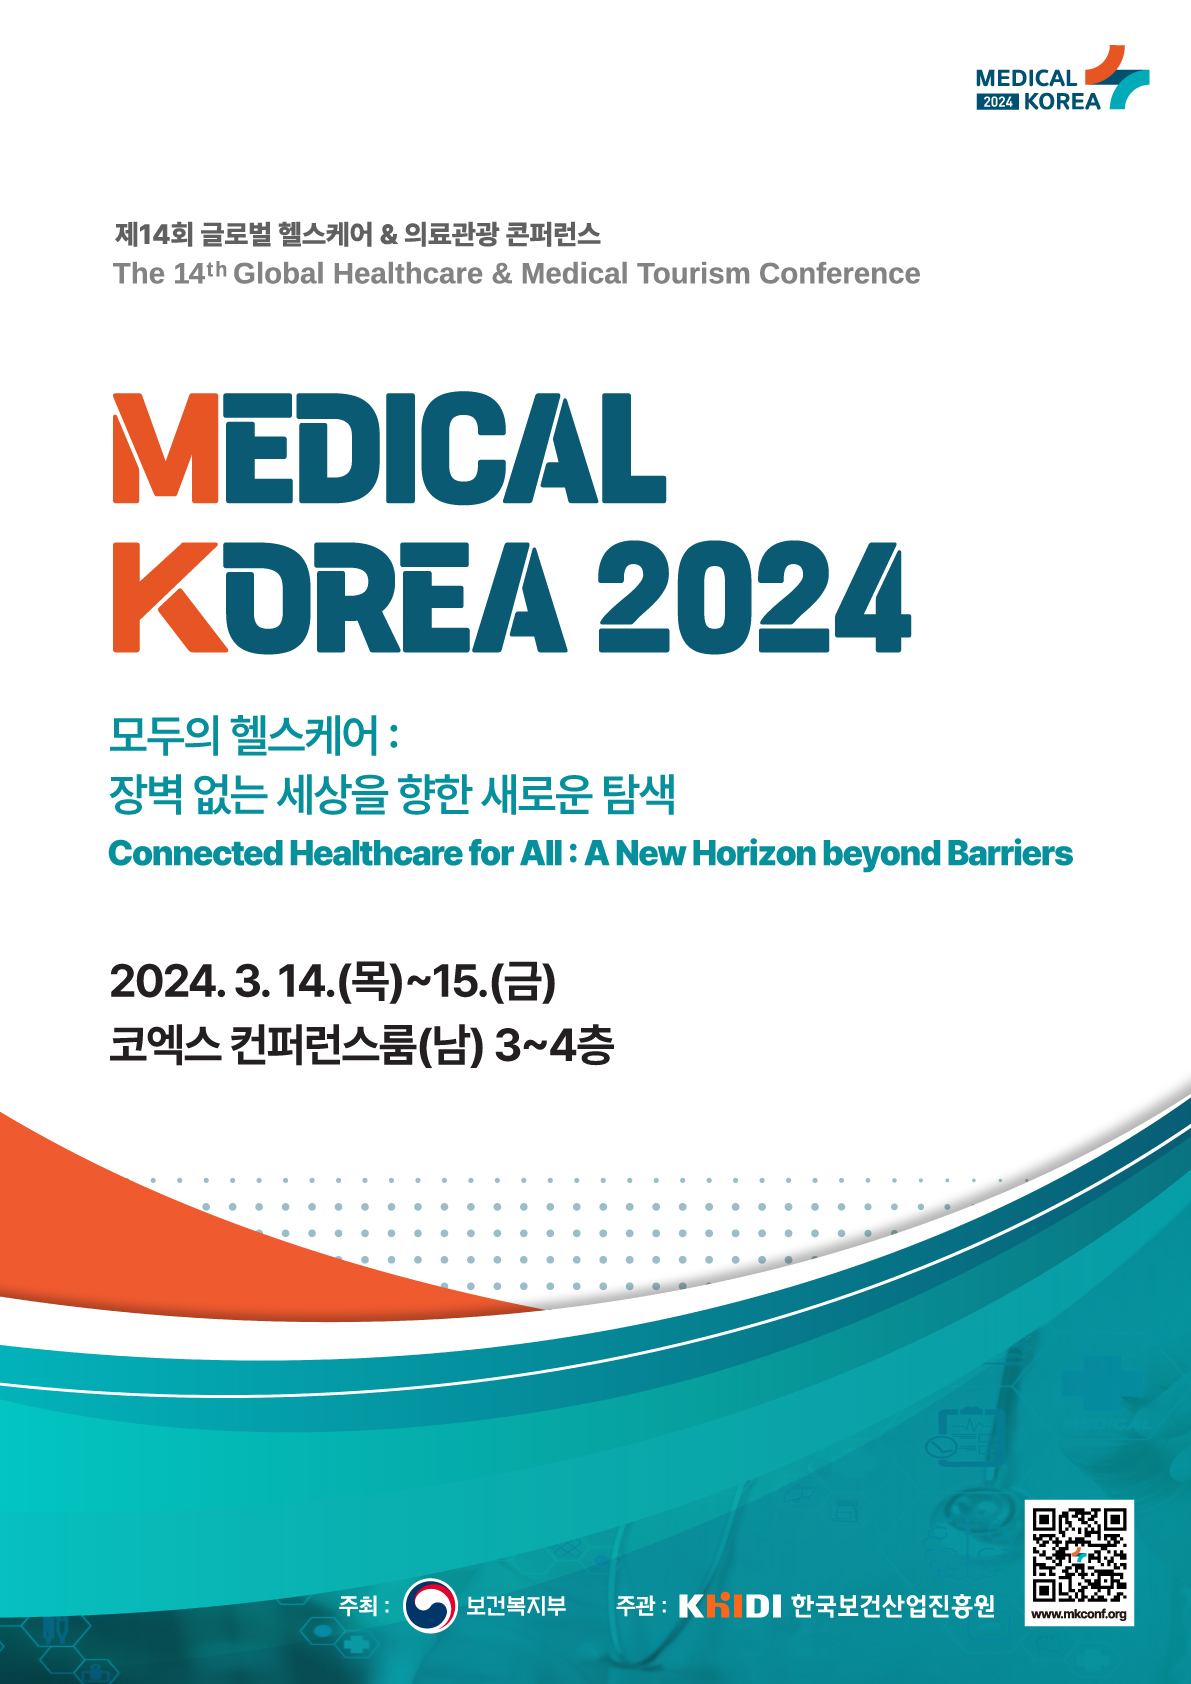 제14회 글로벌 헬스케어&의료관광 콘퍼런스(The 14th Global Healthcare & Medical Tourism Conference) / MEDICAL KOREA 2024 - 모두의 헬스케어:장벽 없는 세상을 향한 새로운 탐색(Connected Healthcare for All: A New Horizon beyond Barriers) / 2024.3.14.(목)~15.(금) 코엑스 컨퍼런스룸(남) 3~4층 / 주최 : 보건복지부 / 주관: KHIDI 한국보건산업진흥원 / www.mkconf.org / QR url : https://m.site.naver.com/1iBA9